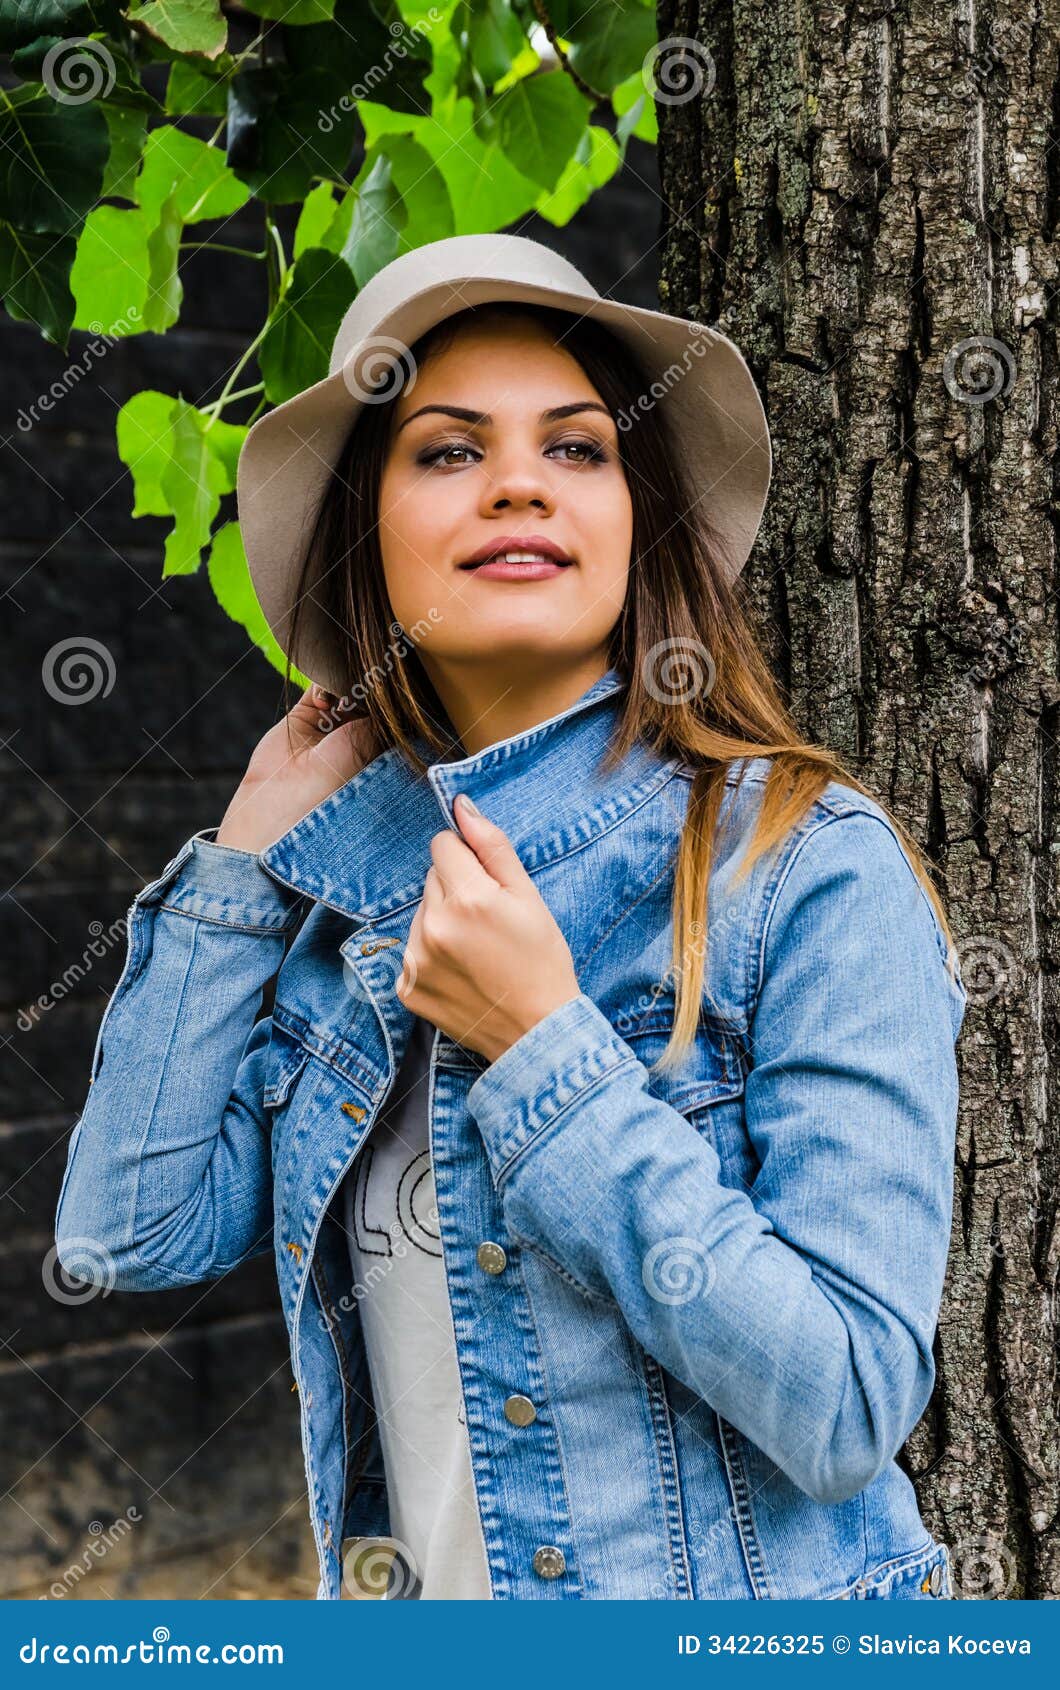 Эмоции. Это фото молодой красивой девушки при шляпа представляя рядом с деревом.